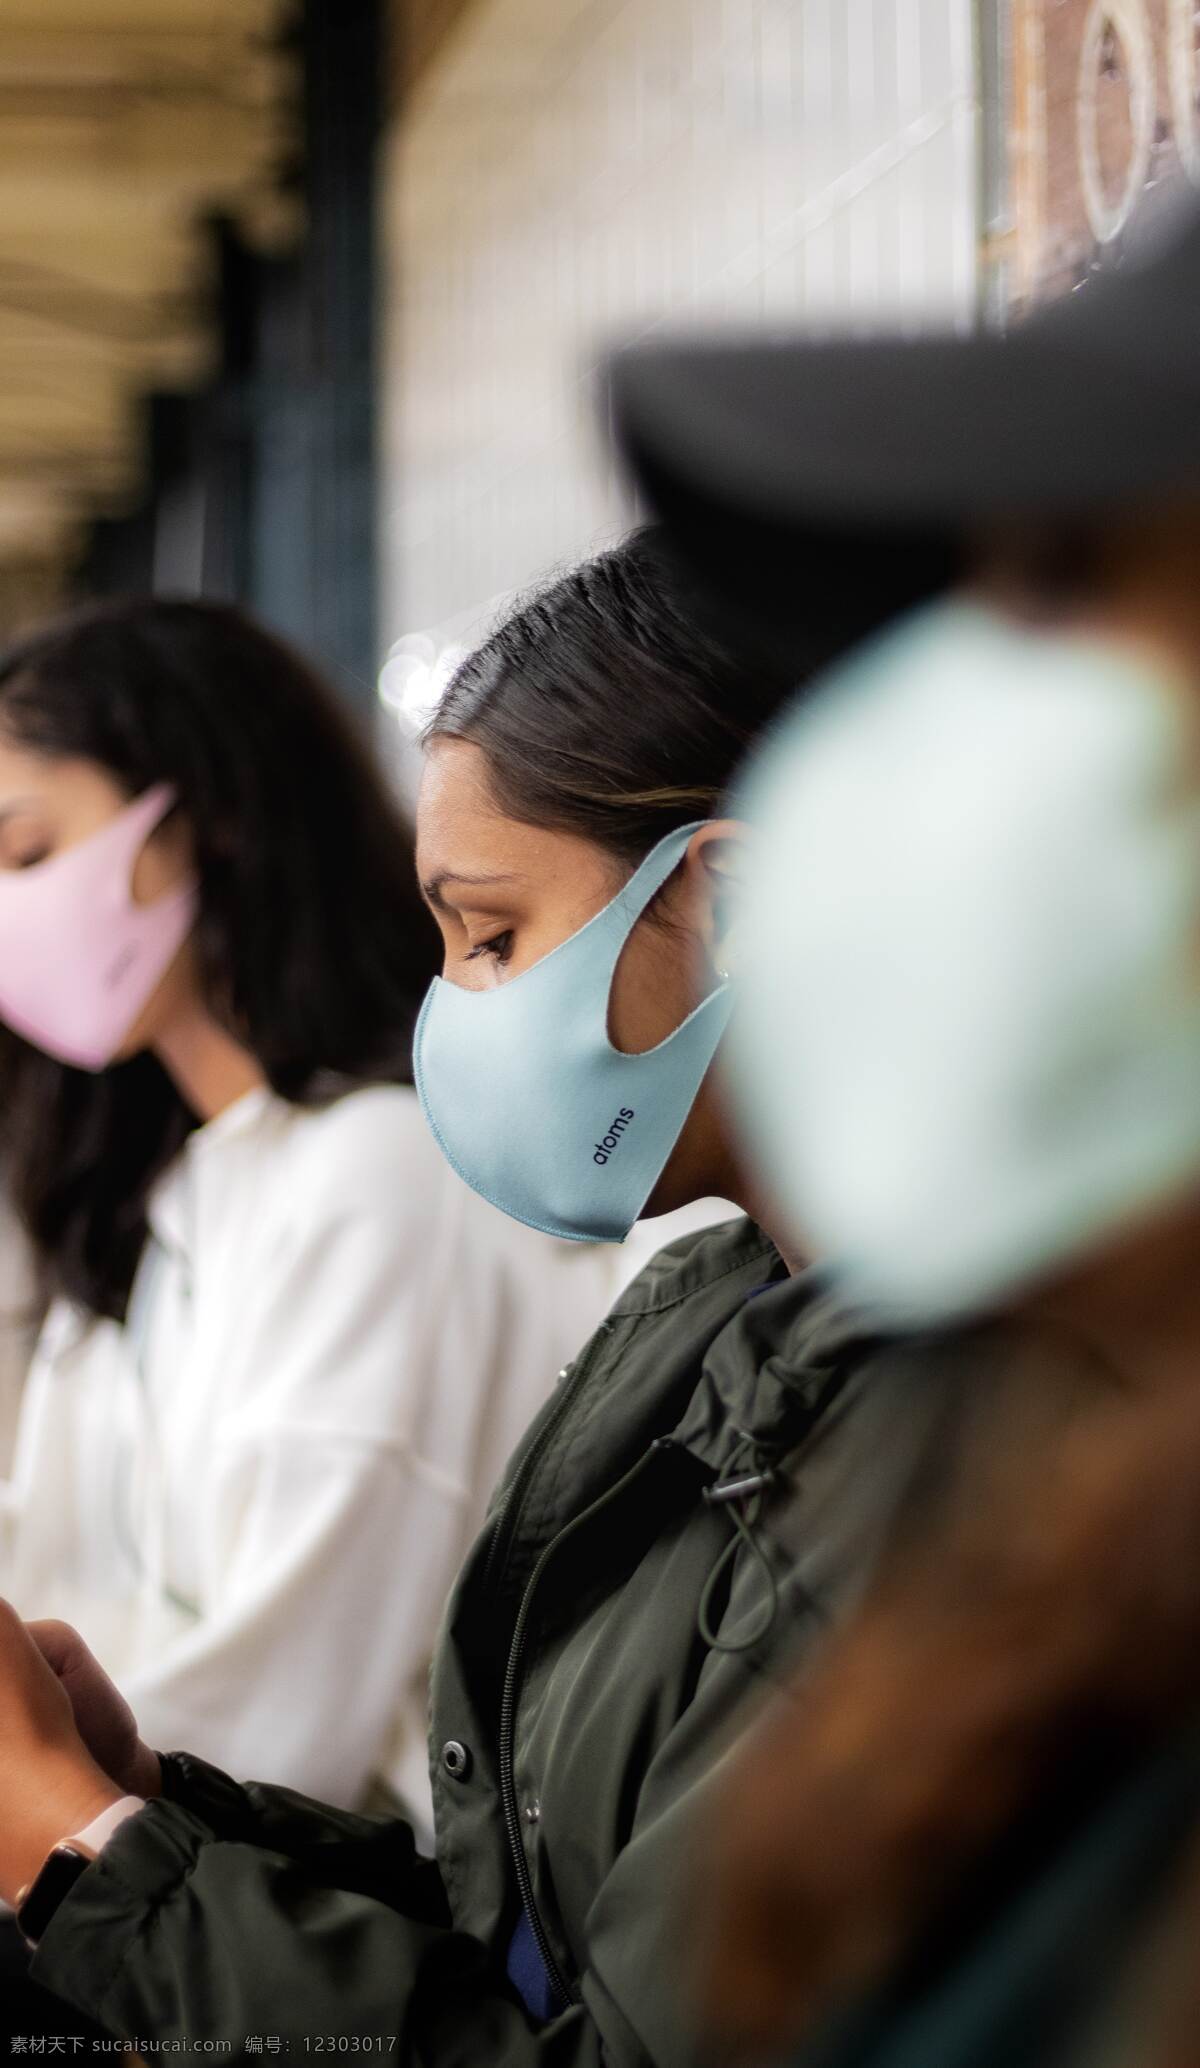 口罩 疫情图片 疫情 戴口罩外国人 公共场所 新型冠状病毒 生活百科 生活素材